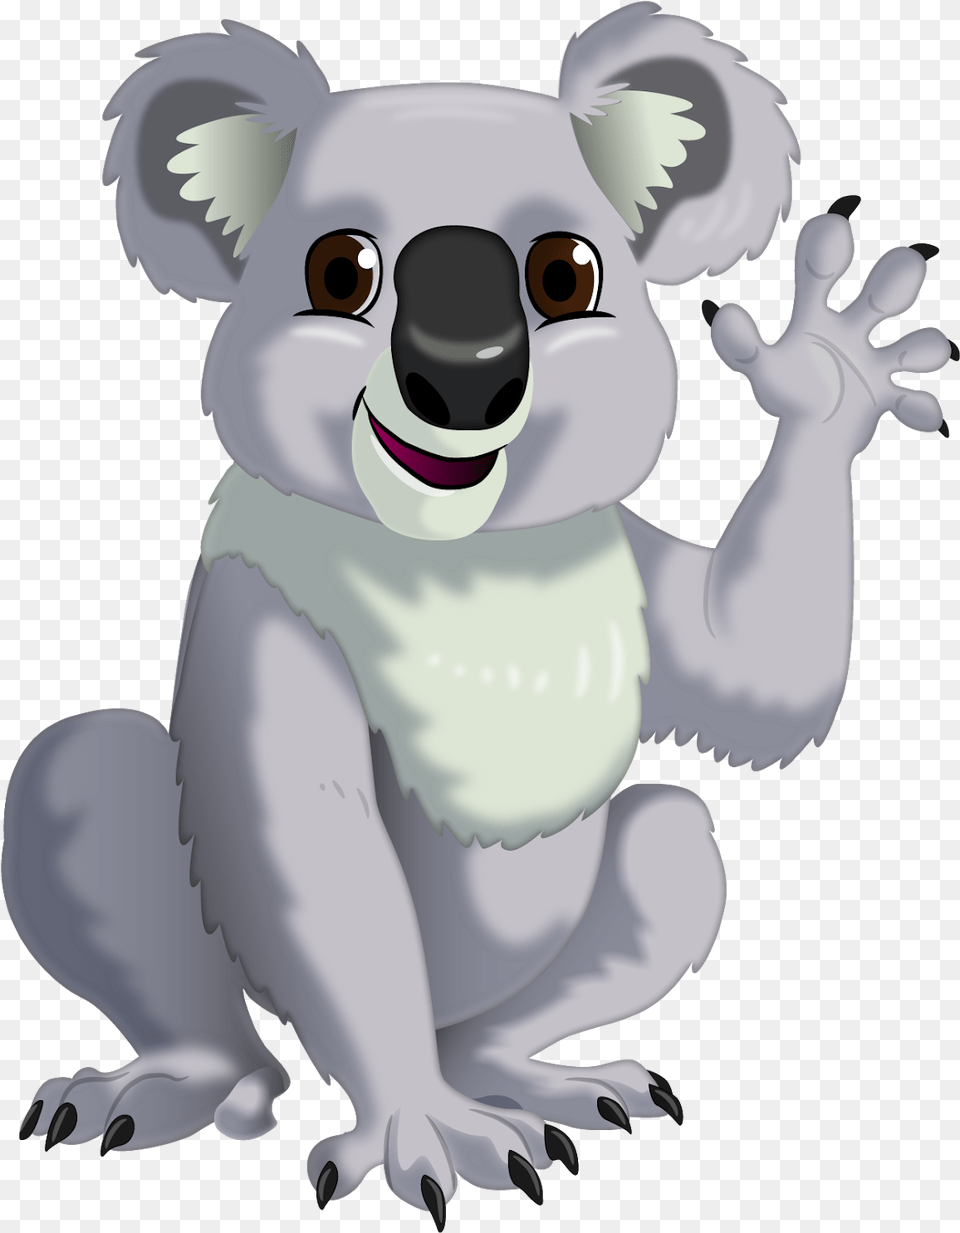 Koala, Animal, Wildlife, Mammal, Nature Free Png